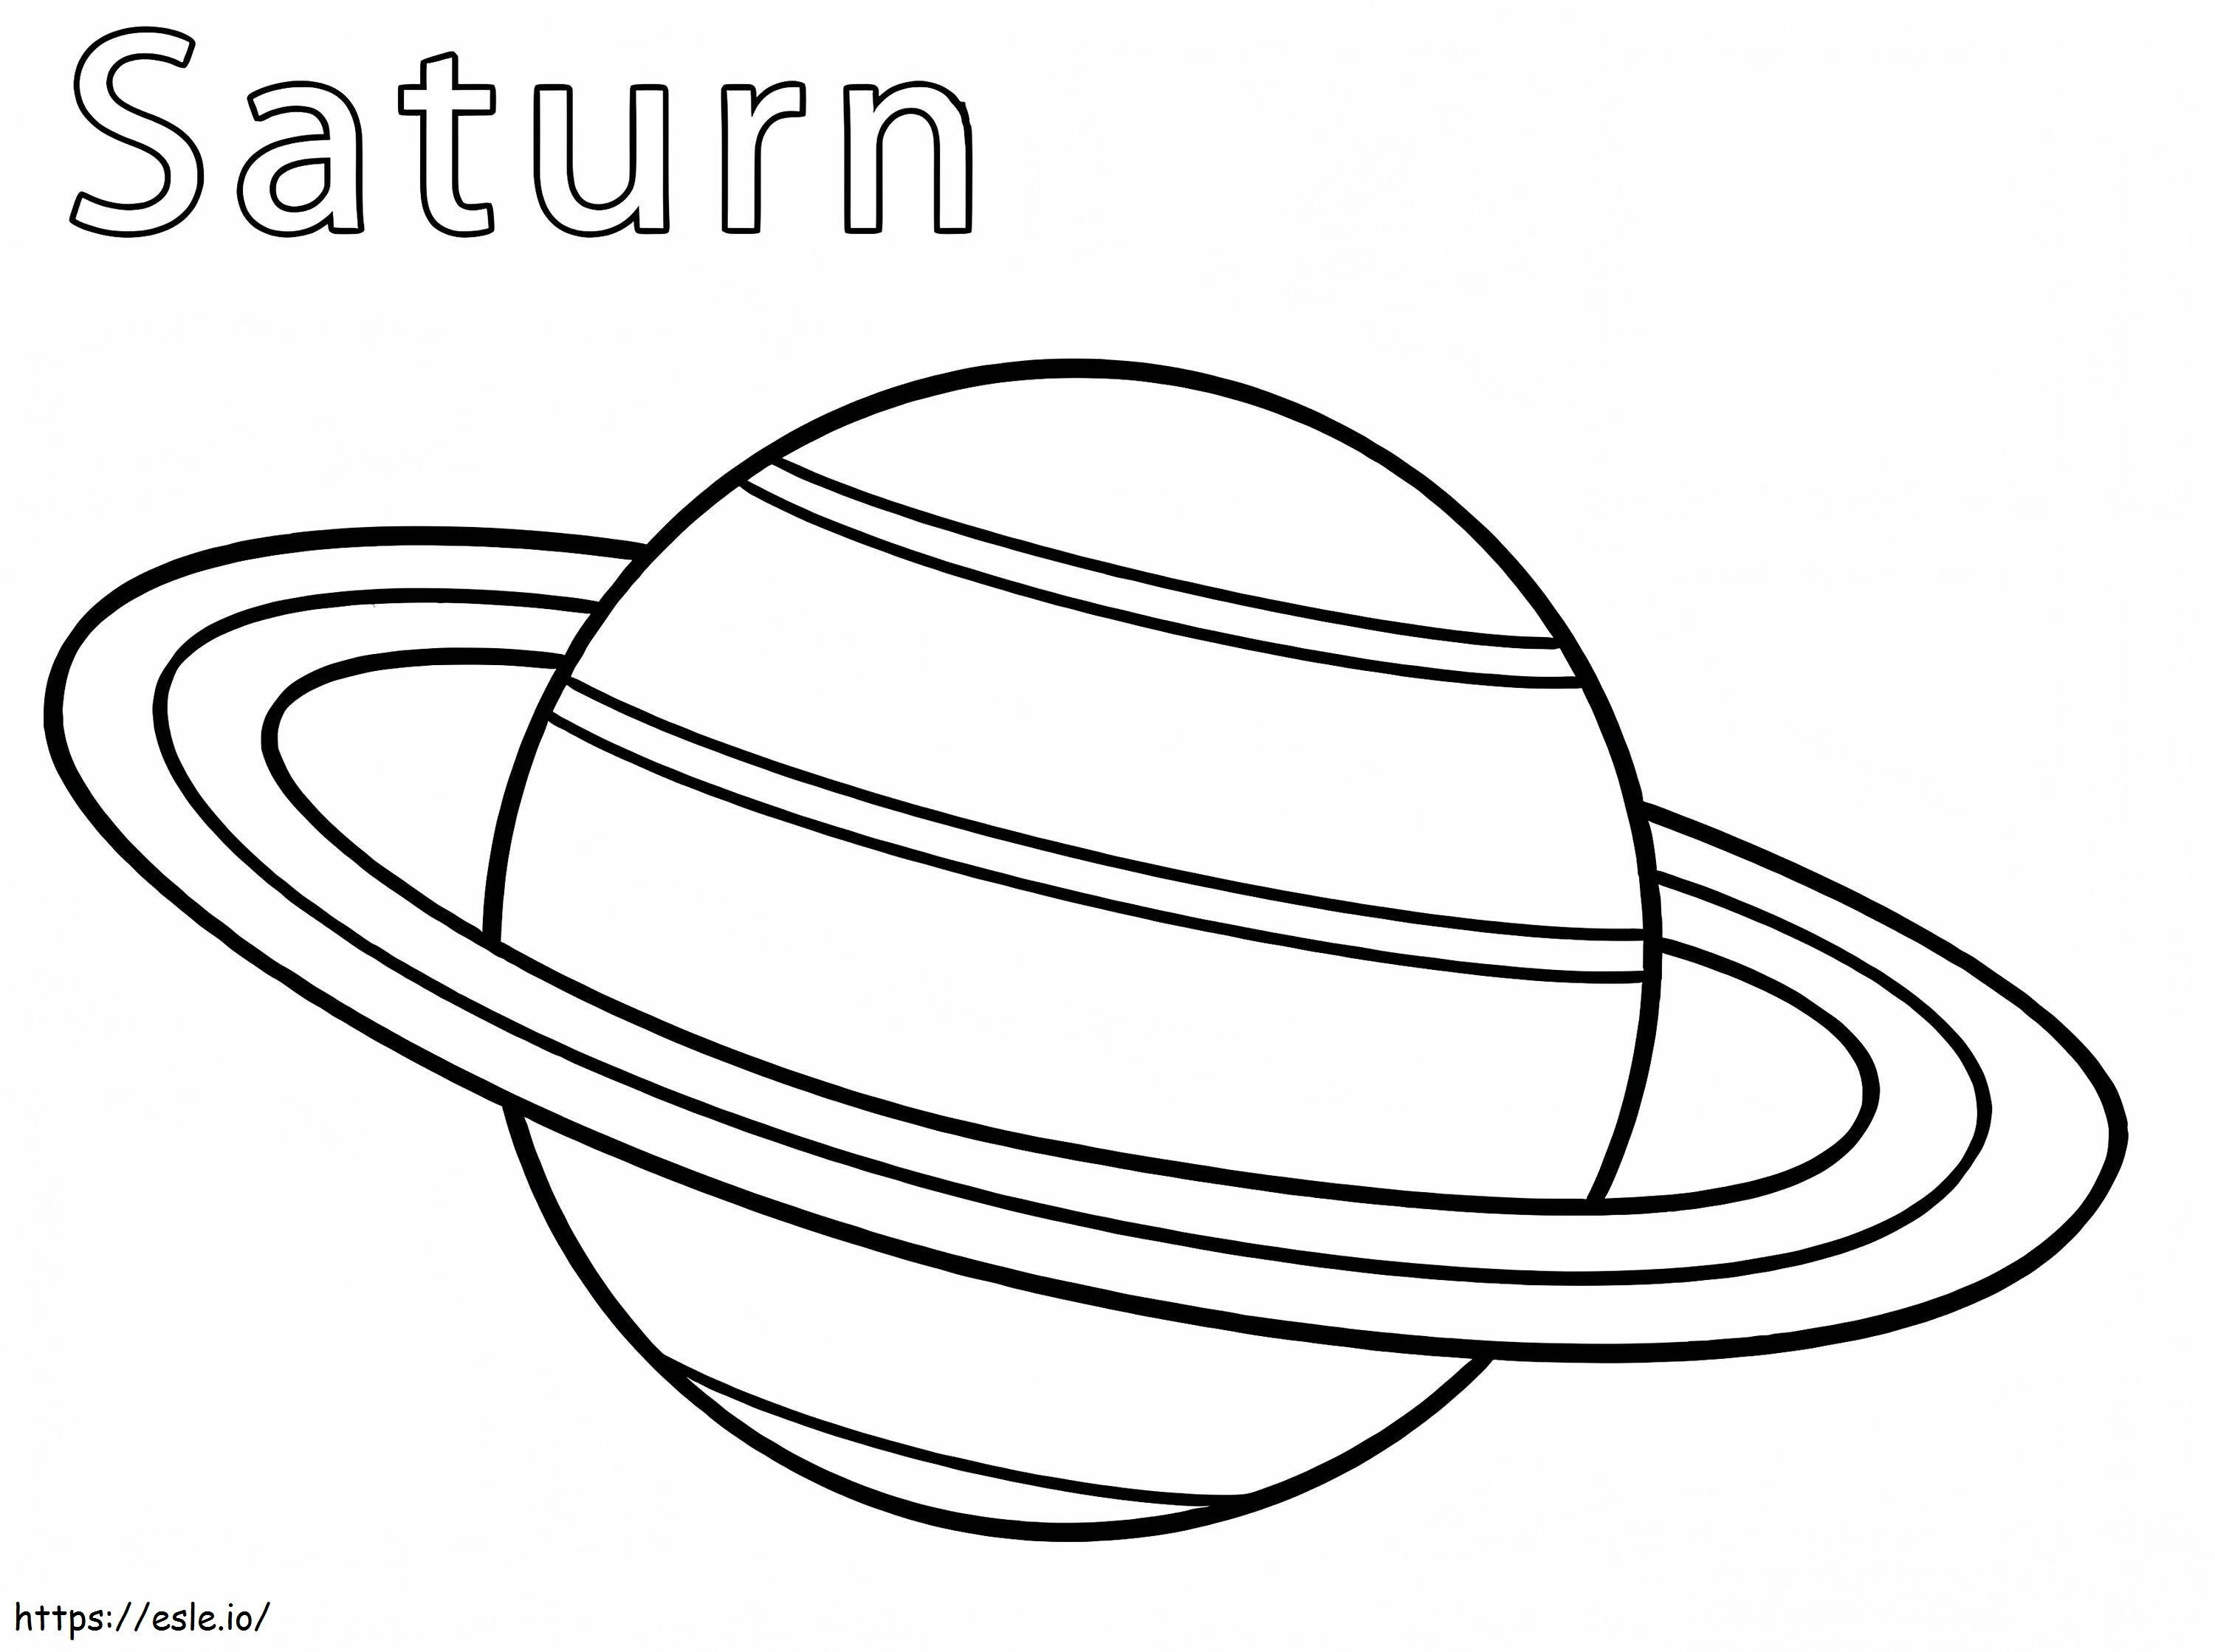 Planeetat Saturnus värityskuva